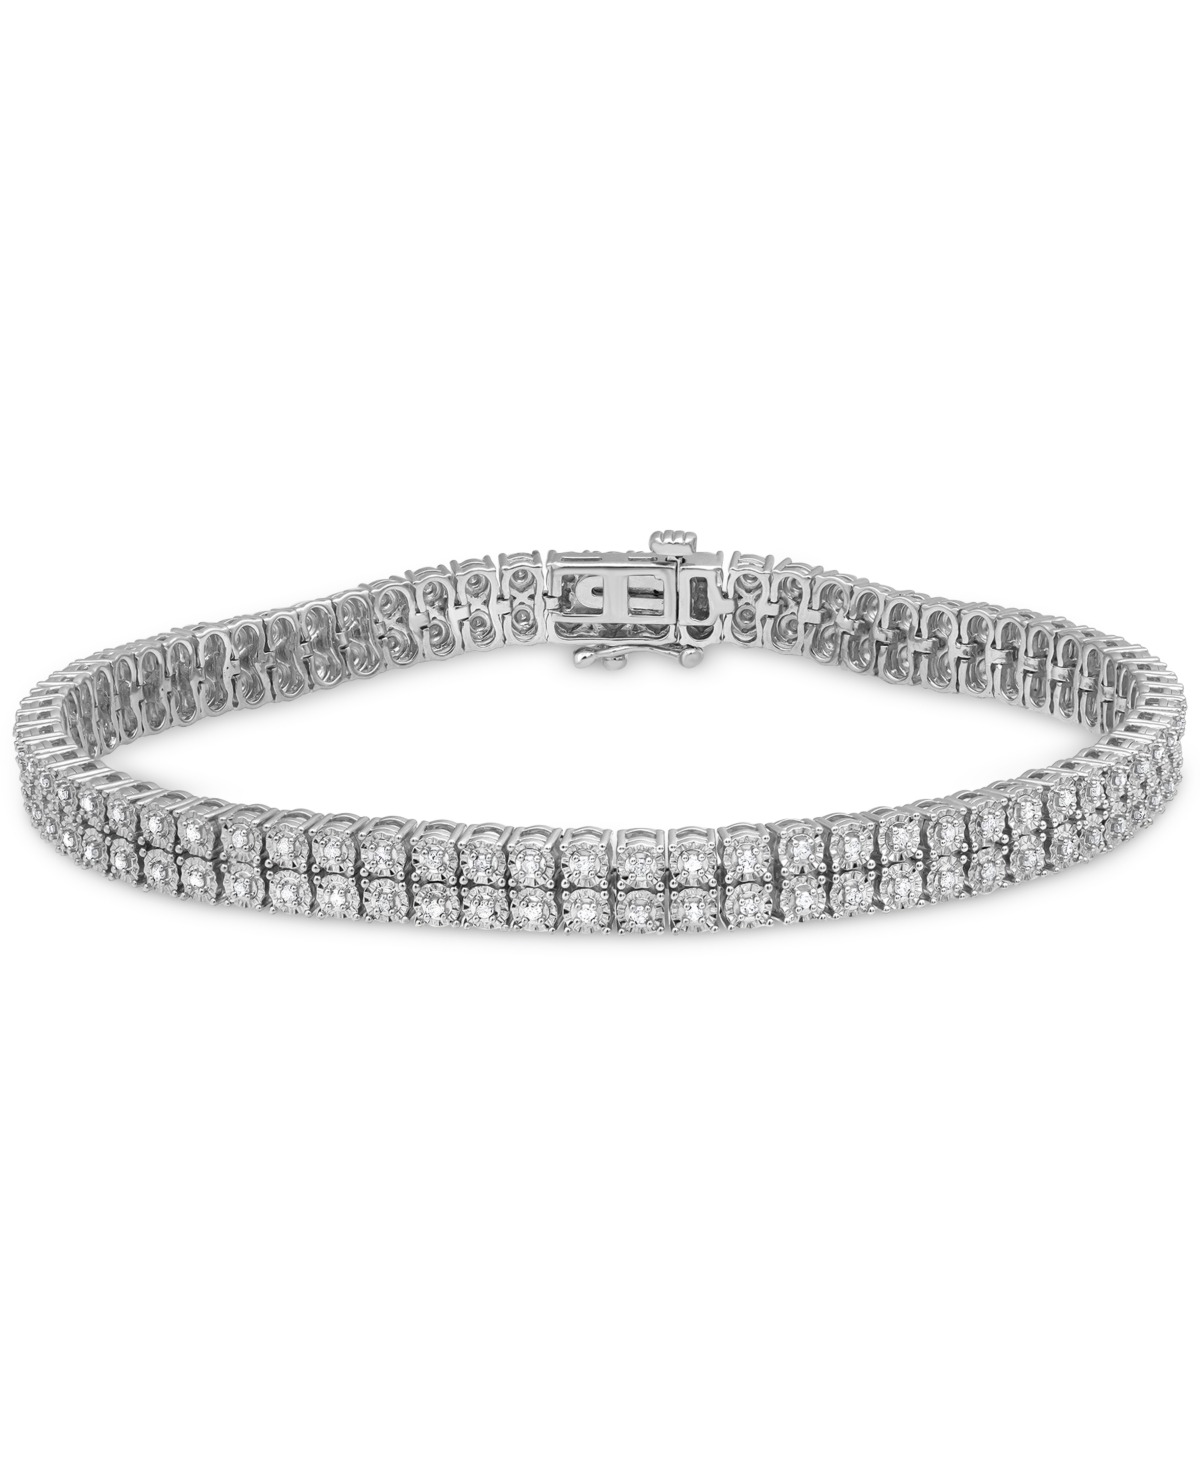 Diamond Tennis Bracelet (1 ct. t.w.) in Sterling Silver, 7-1/2" - Silver